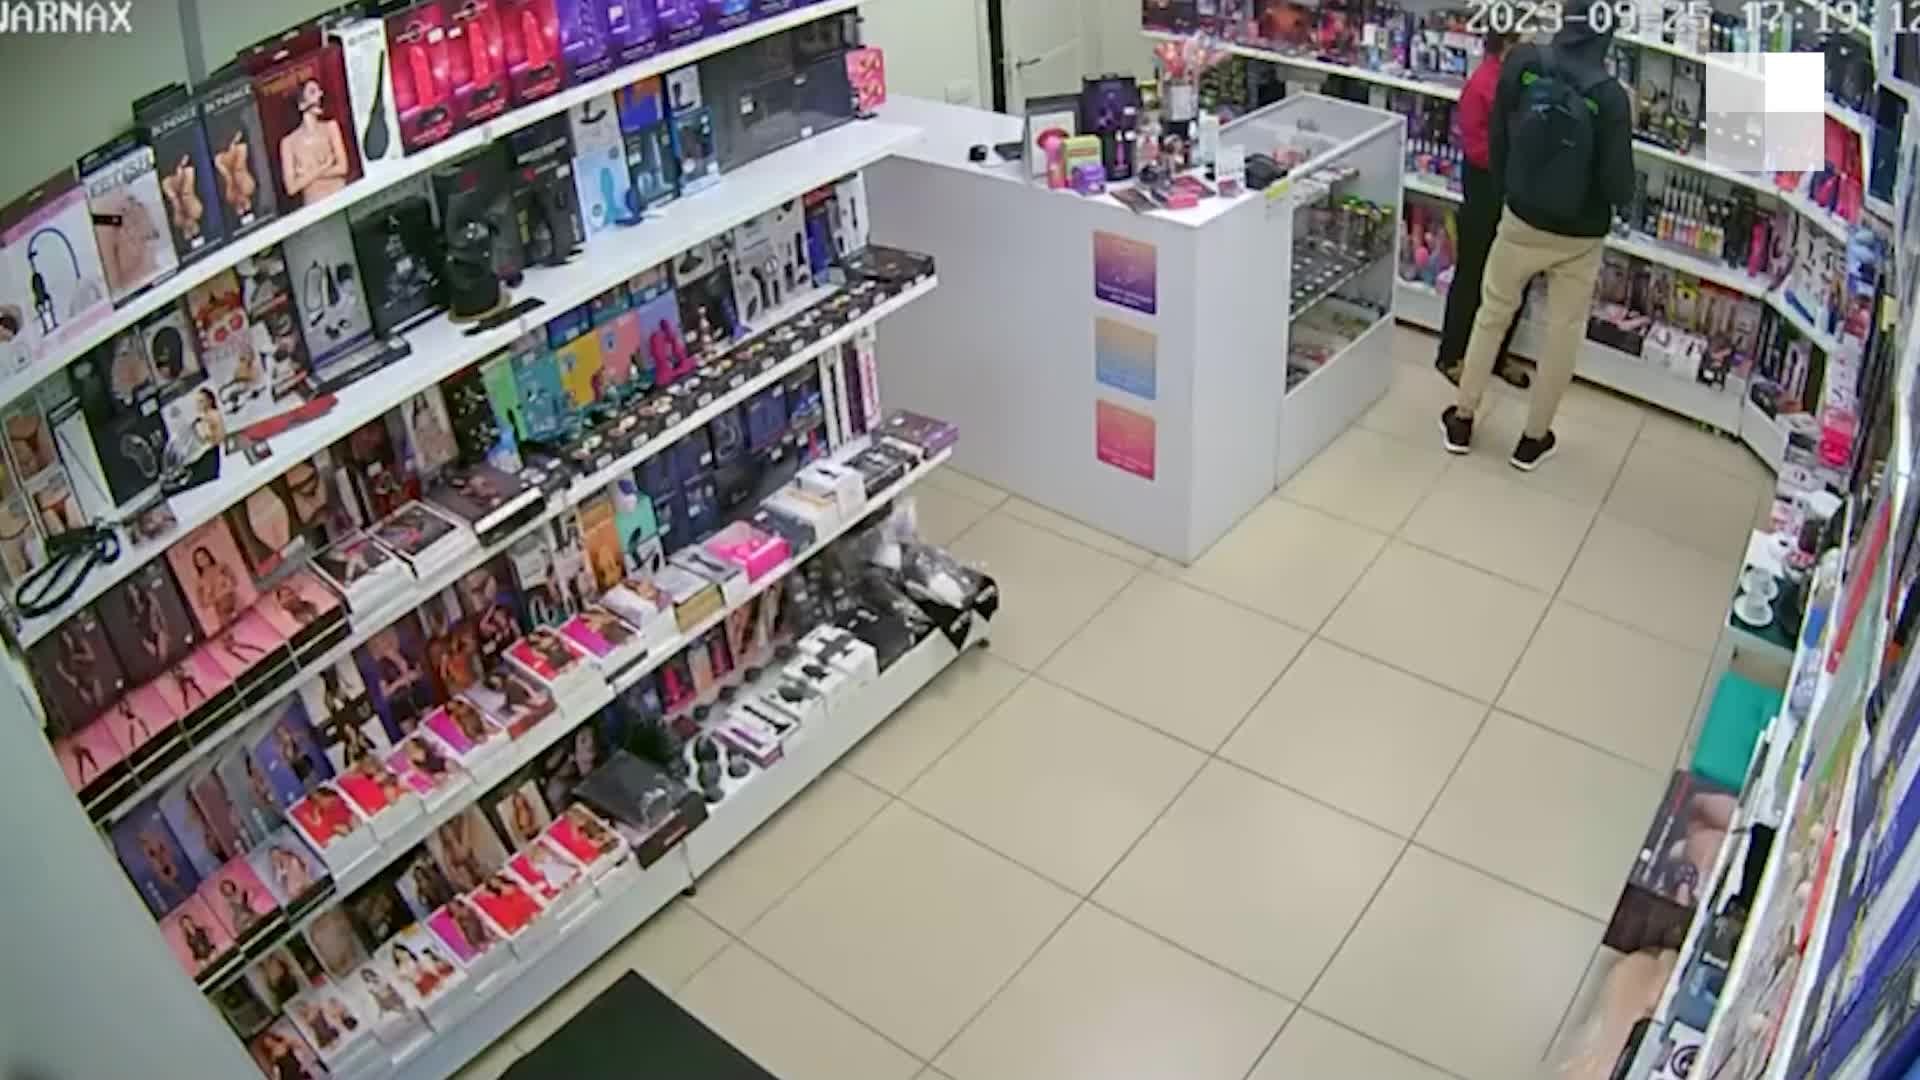 Адреса интим магазинов секс шопов в Москве и области – широкий каталог, доставка, недорогие цены